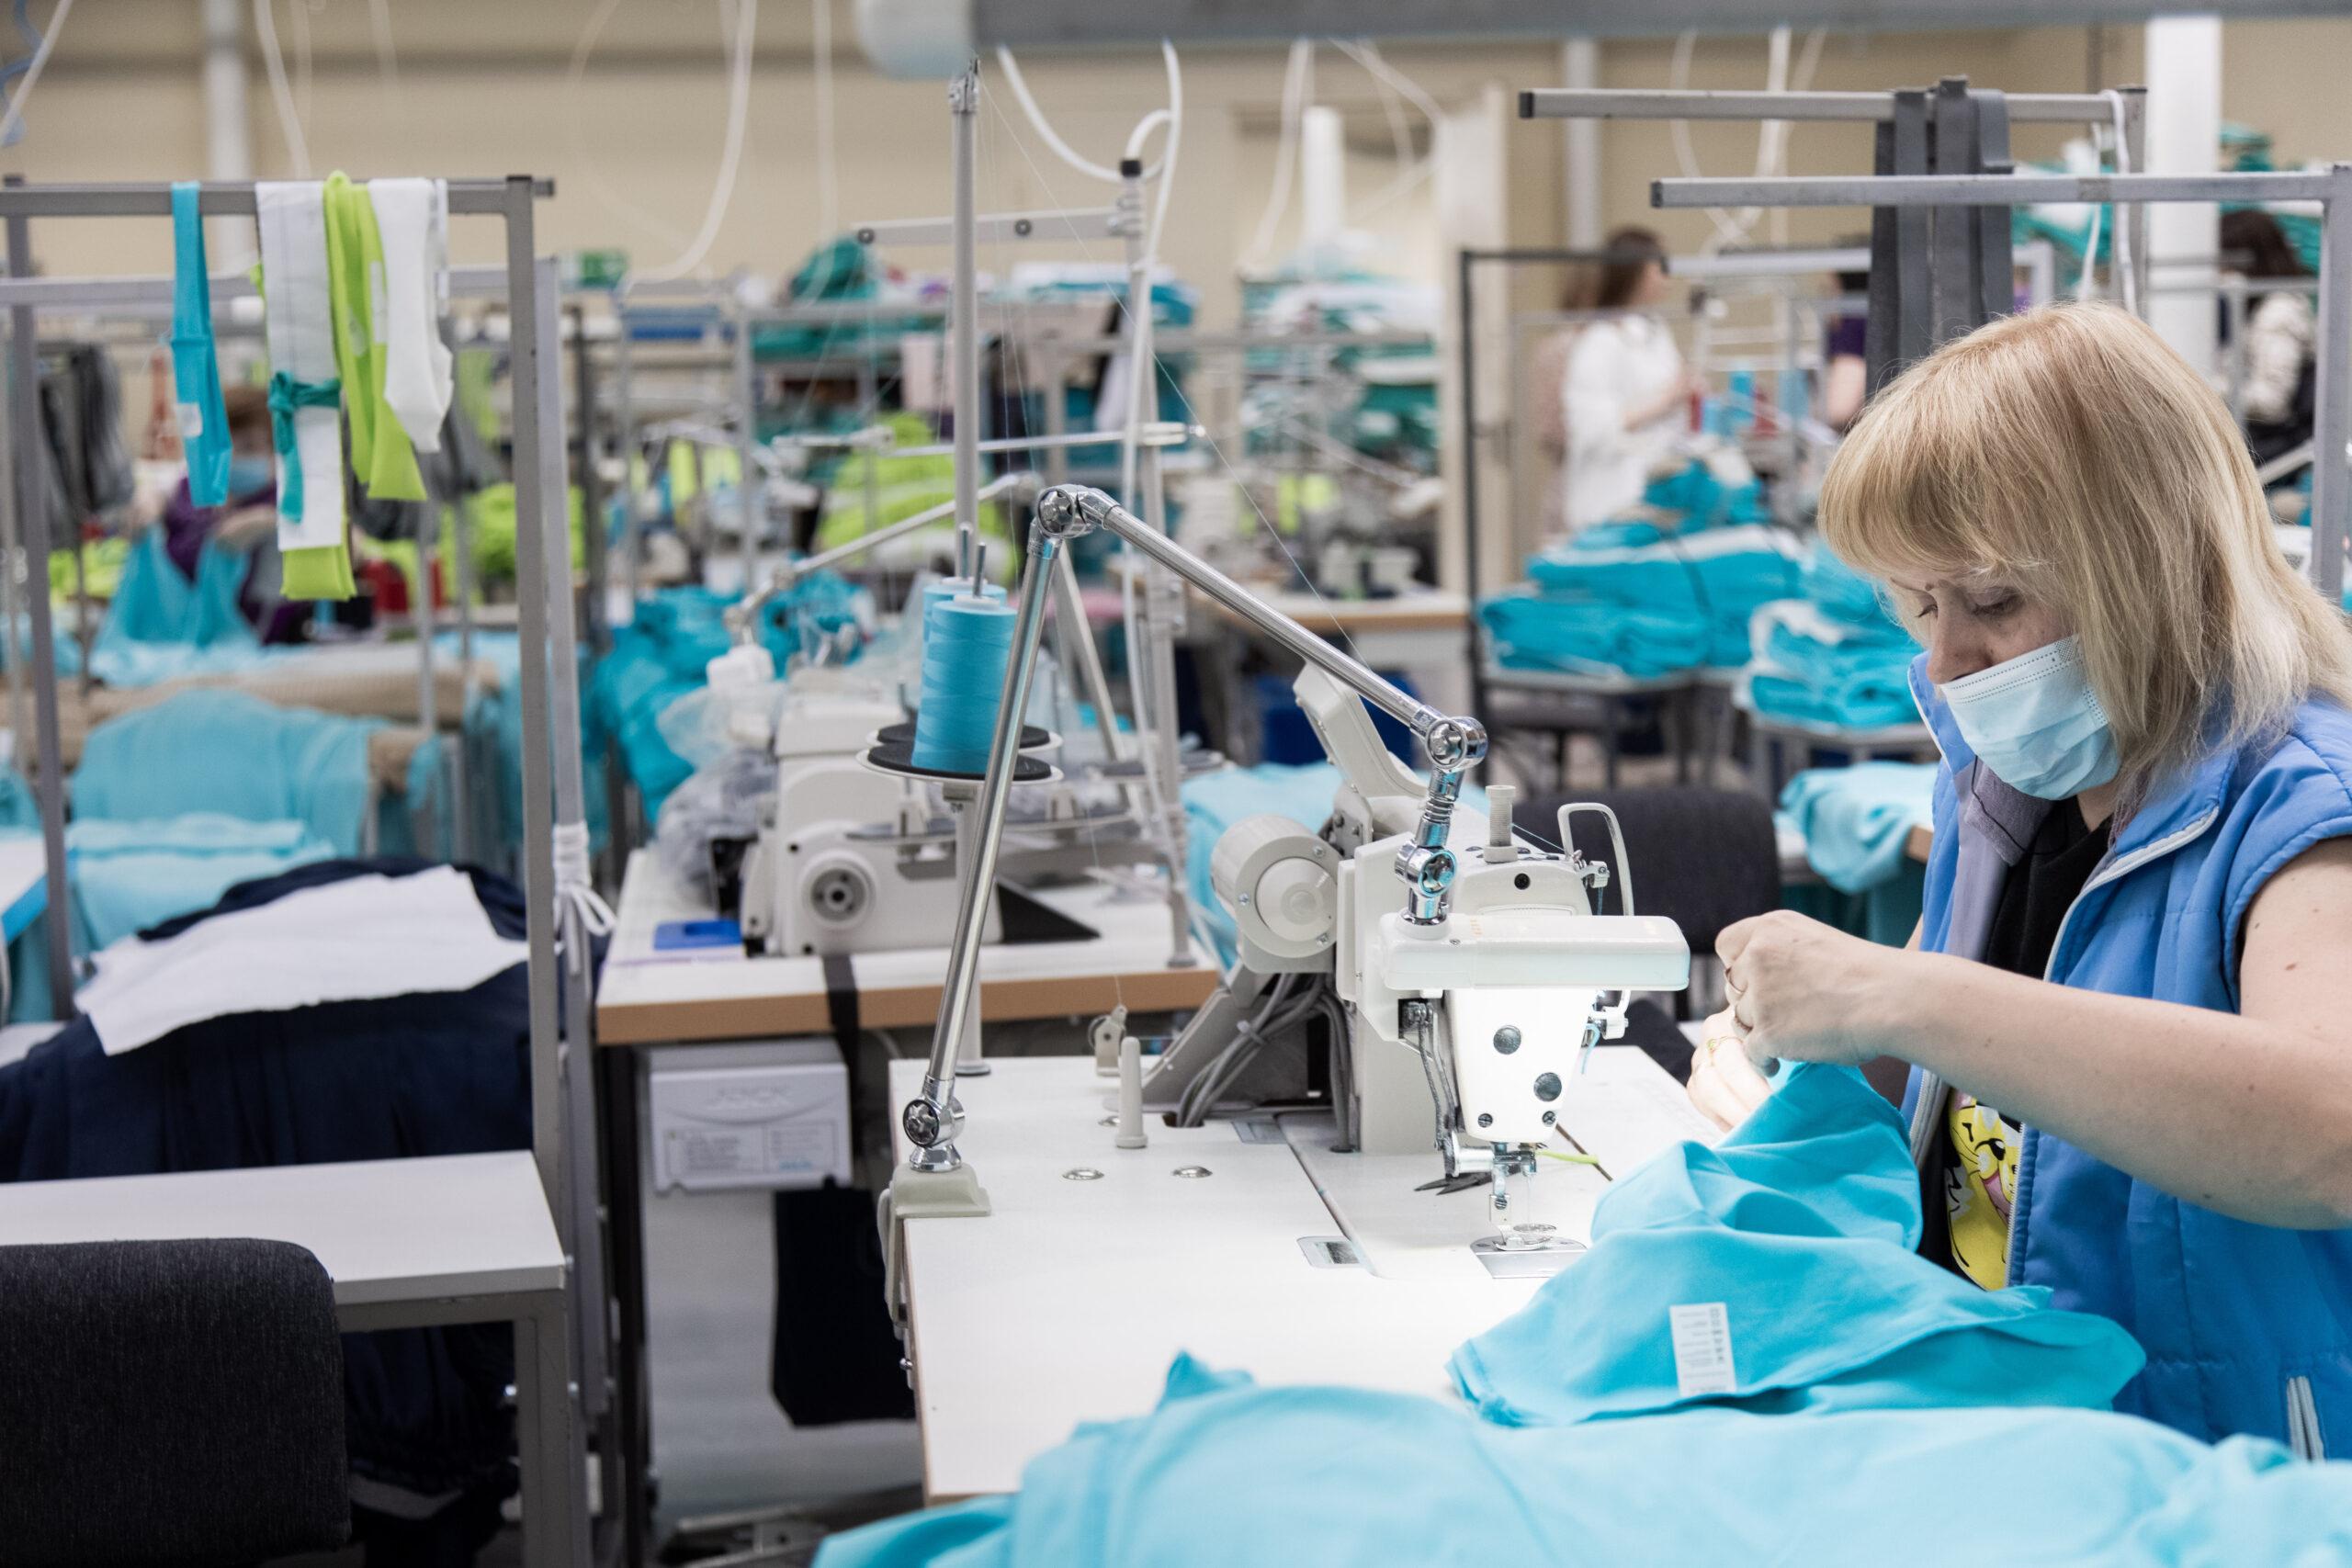 30 текстильных предприятий в Ивановской области создадут собственные бренды